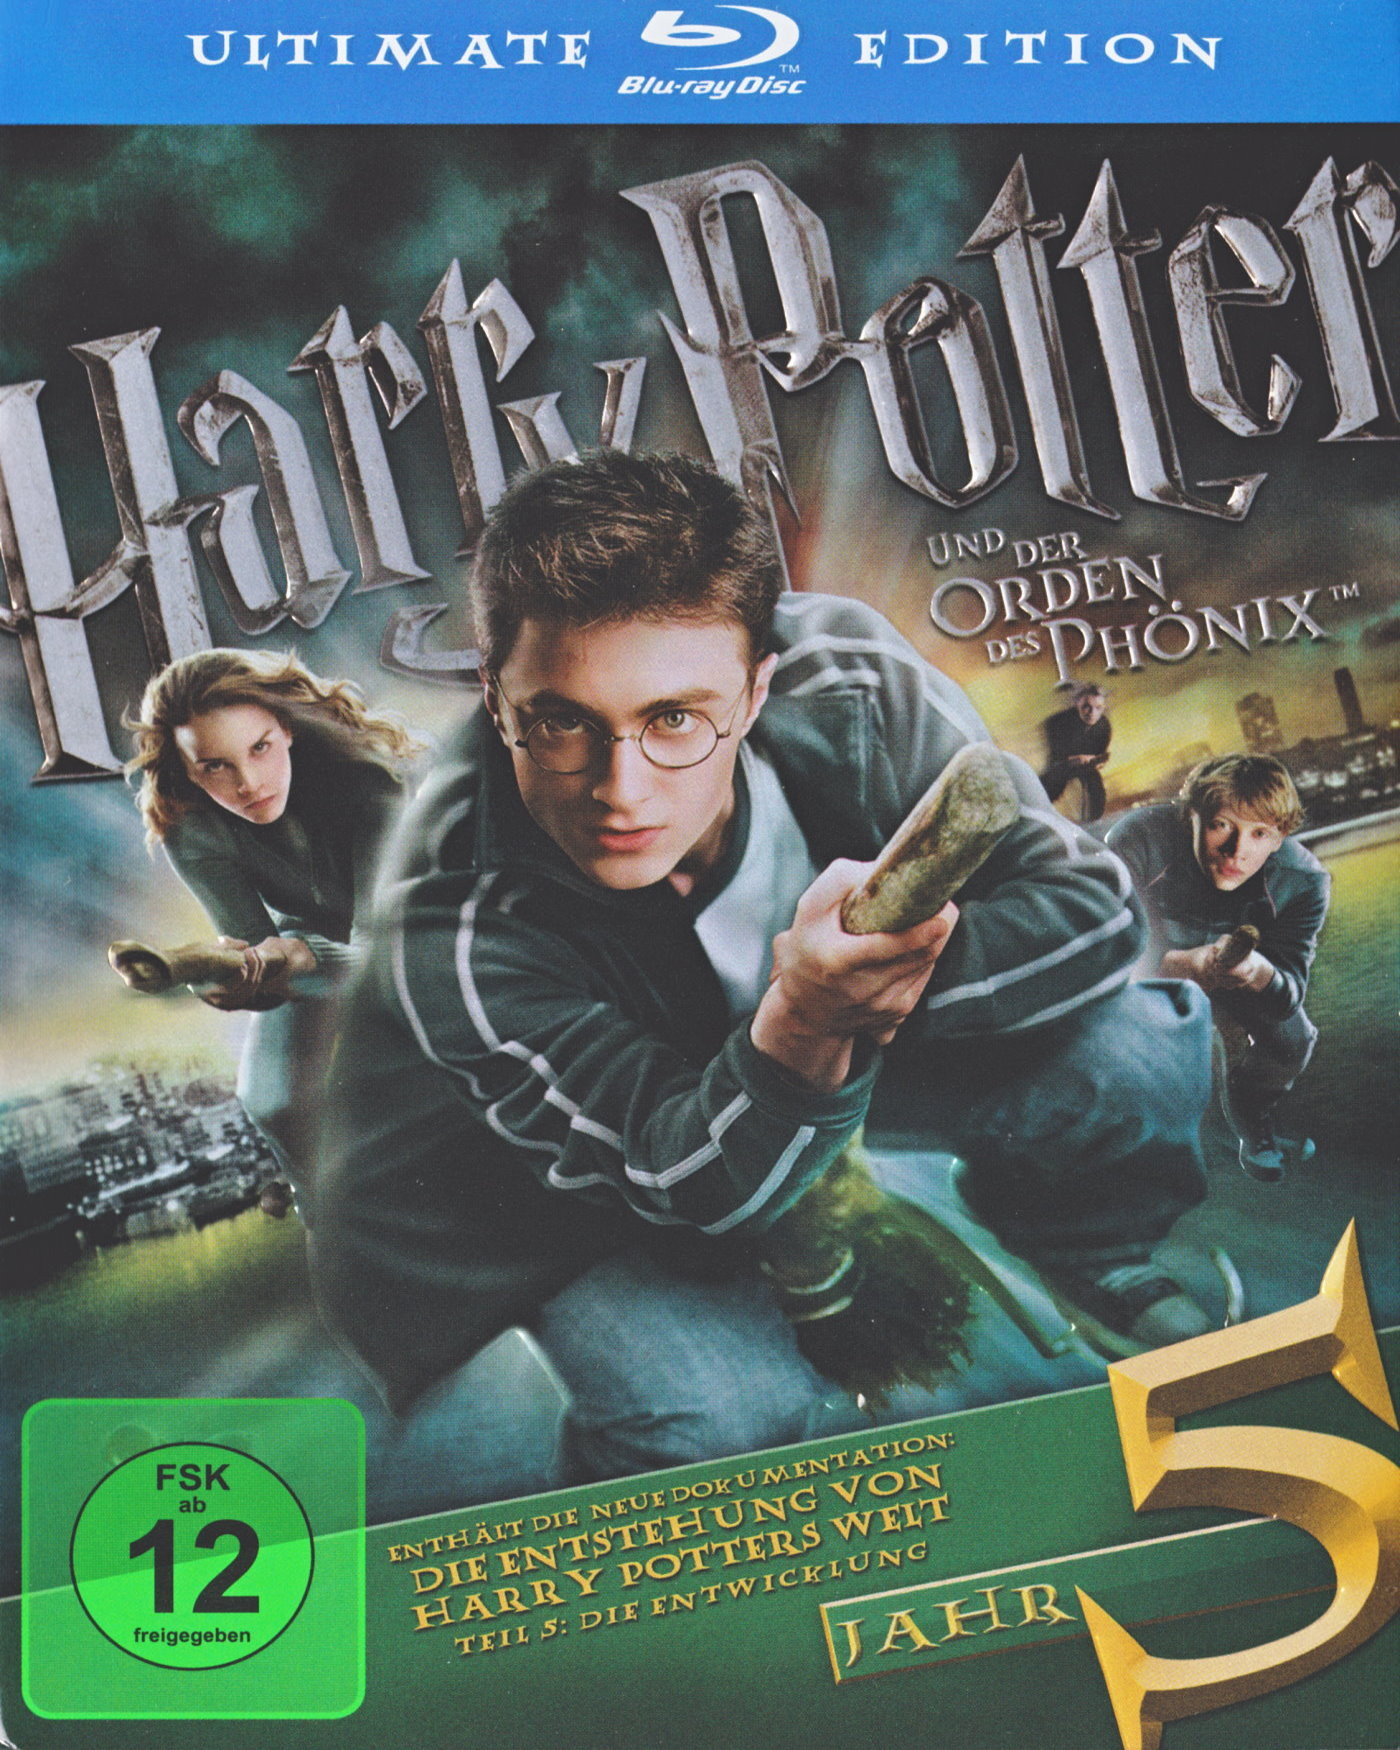 Cover - Harry Potter und der Orden des Phönix.jpg